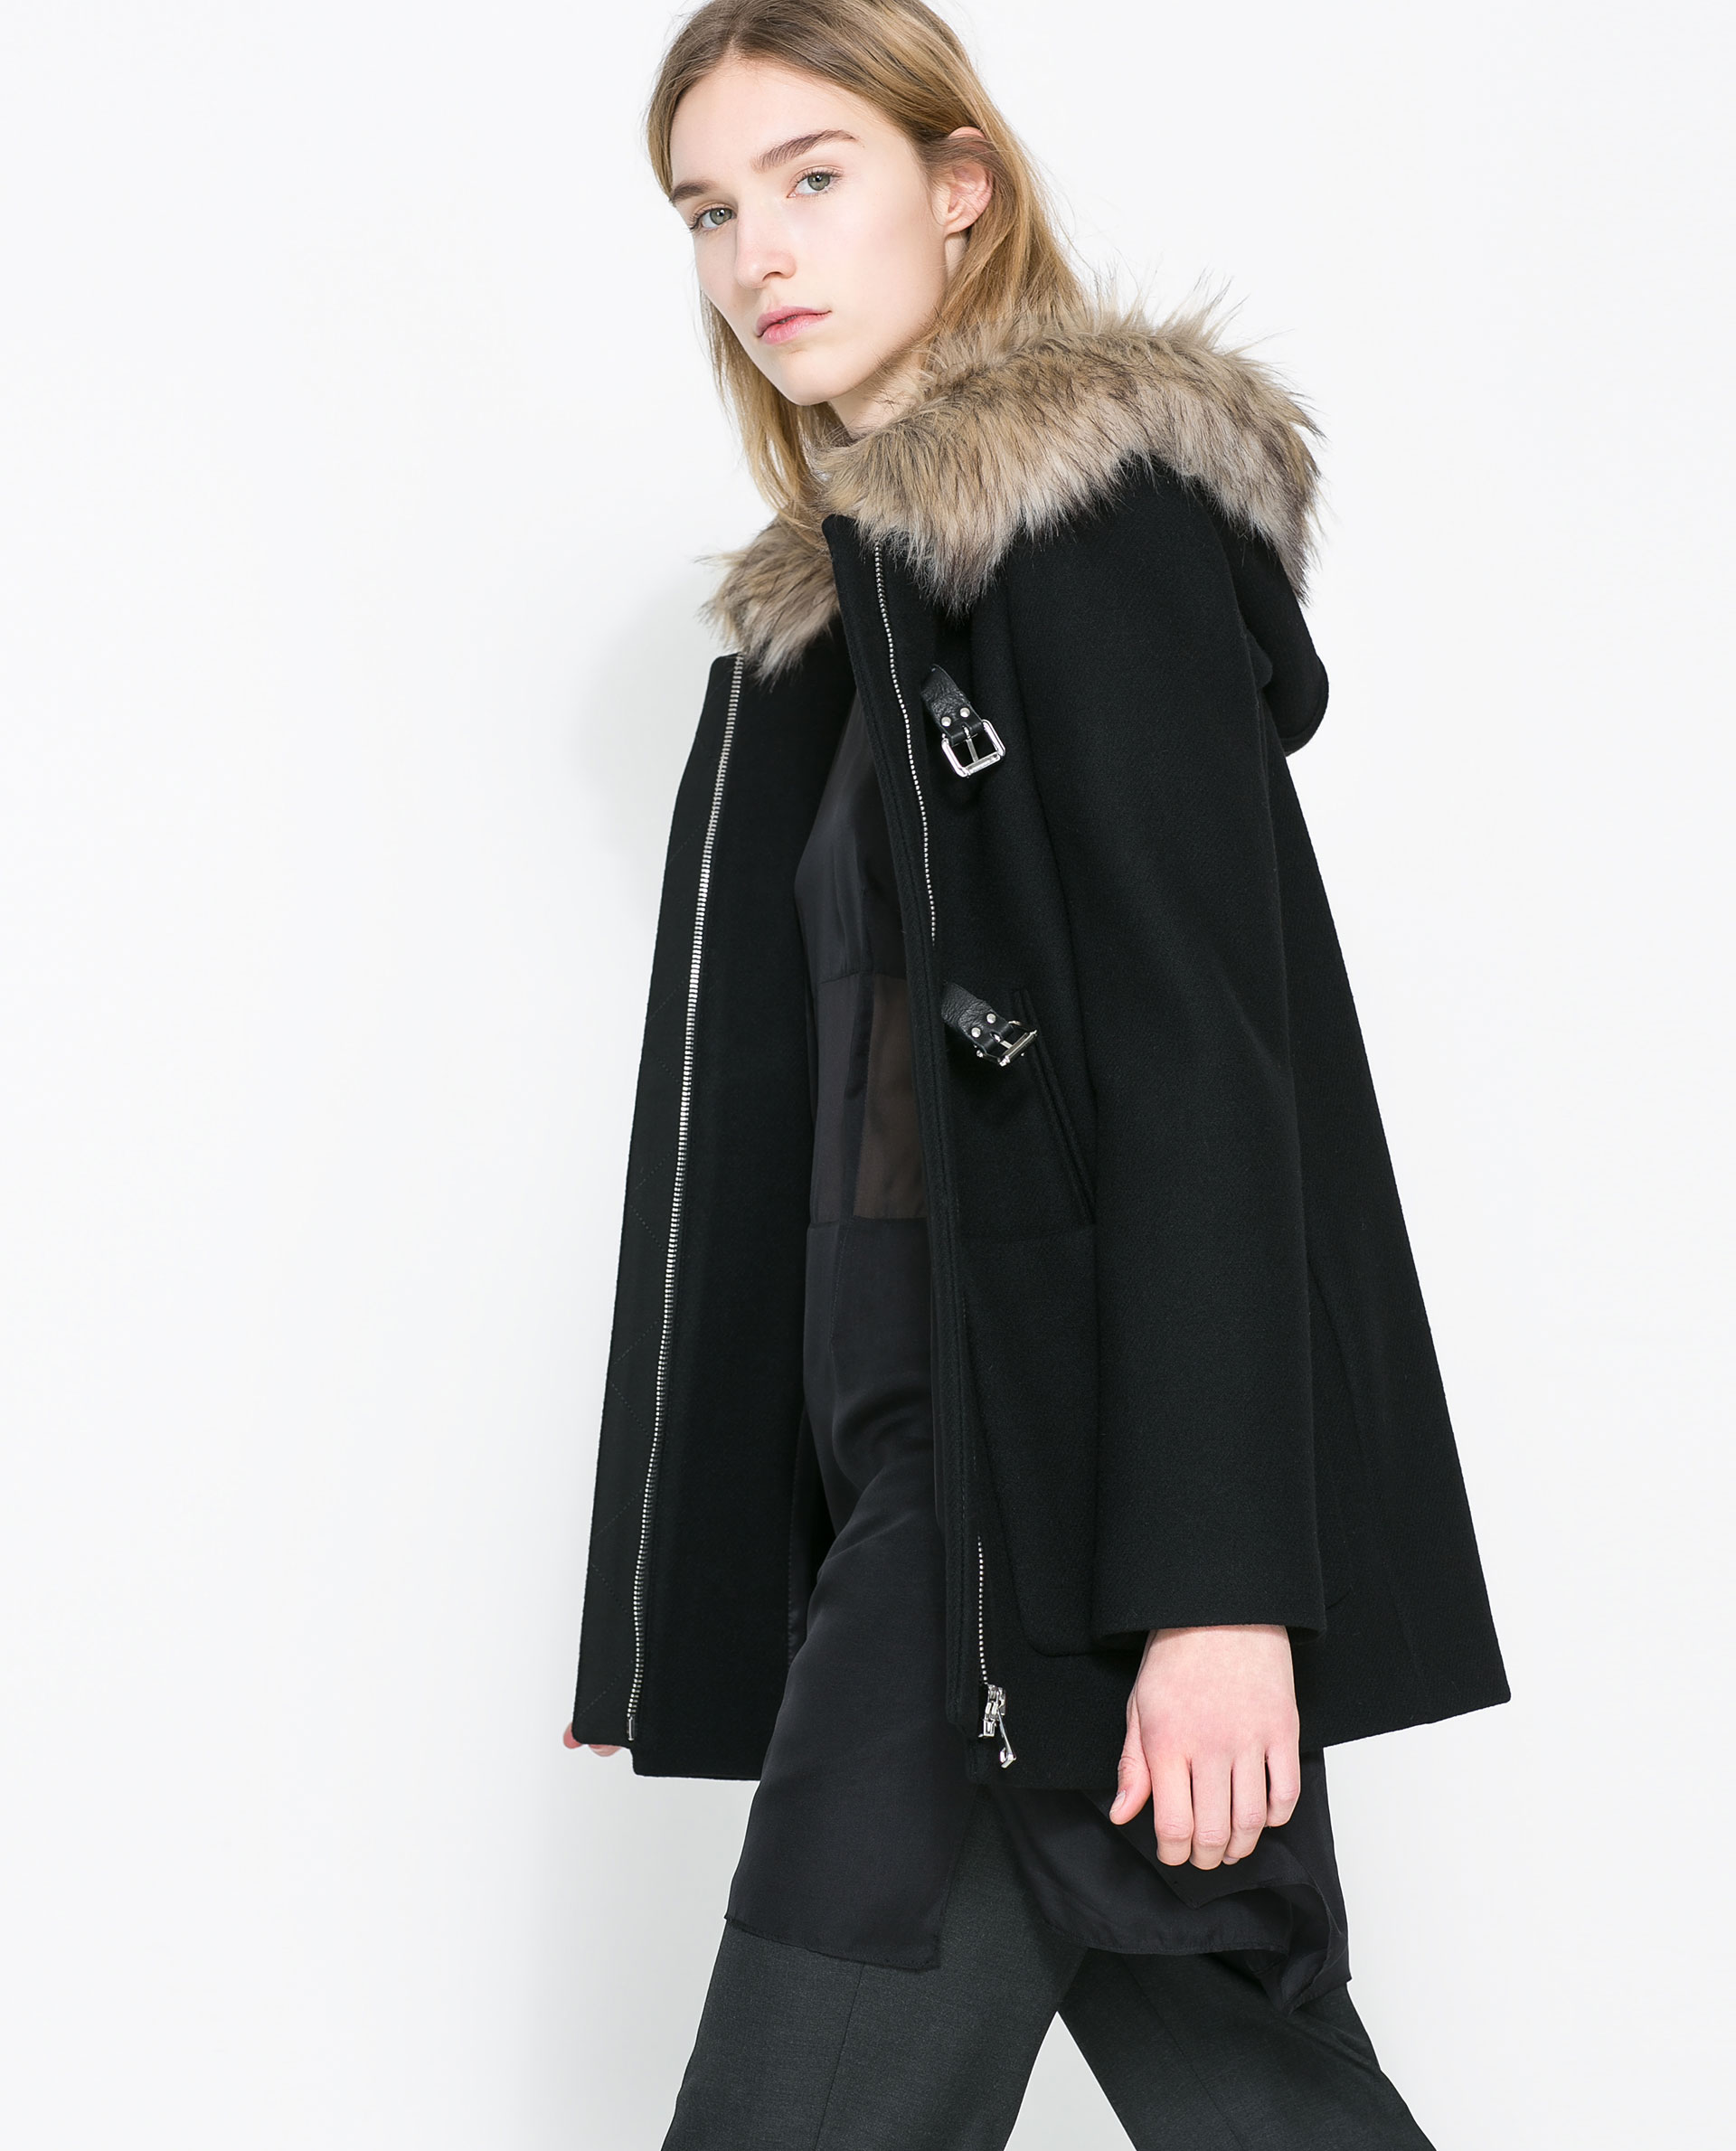 Download Zara Black Coat Pictures